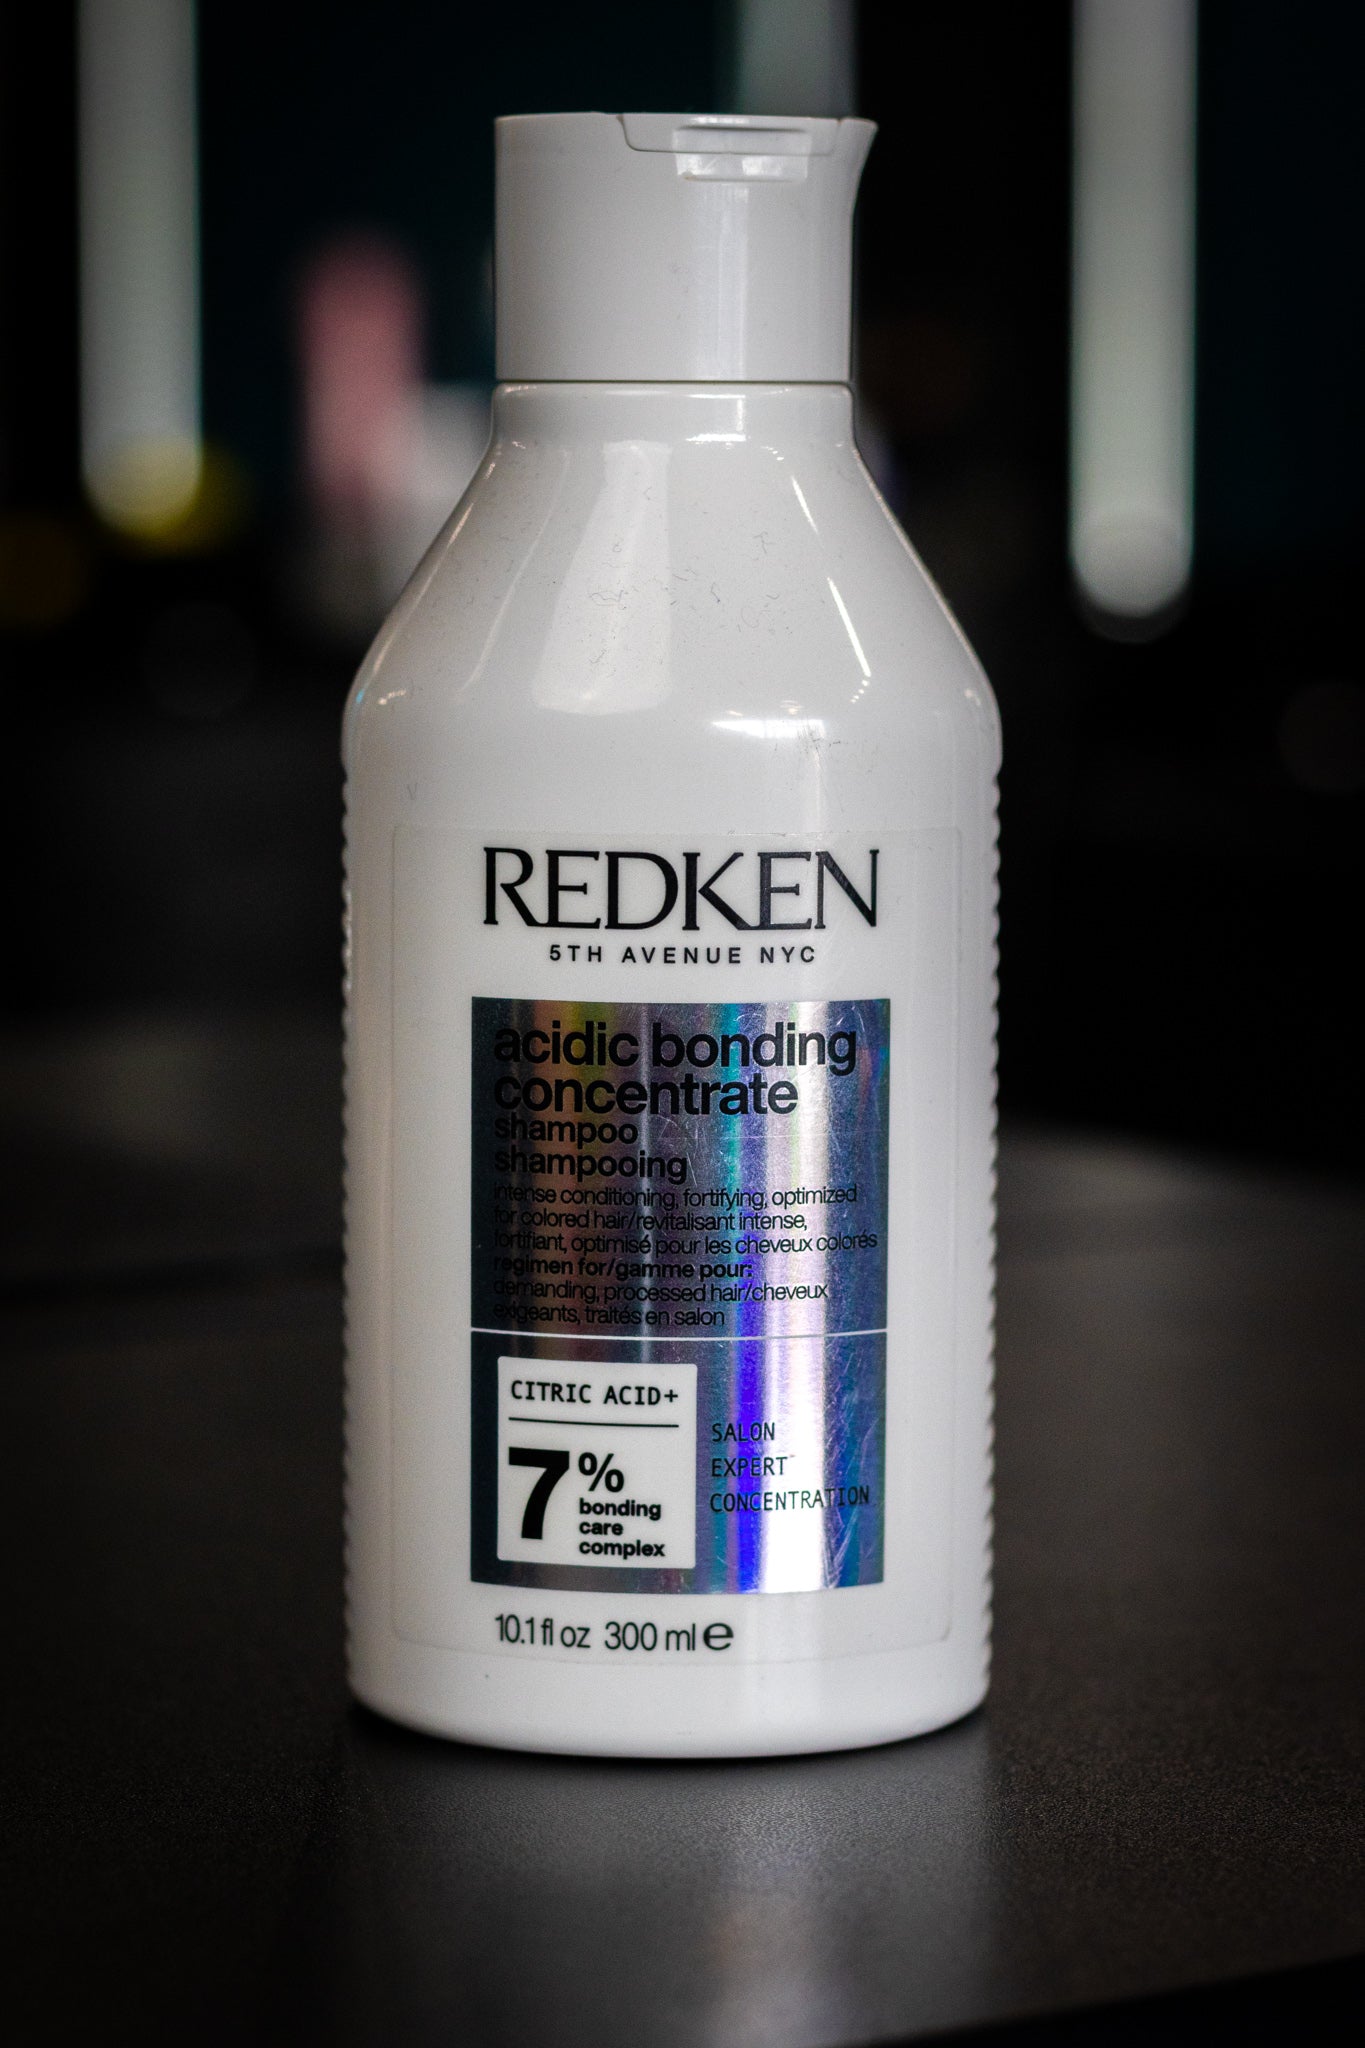 Redken Acidic Bonding Conditioner